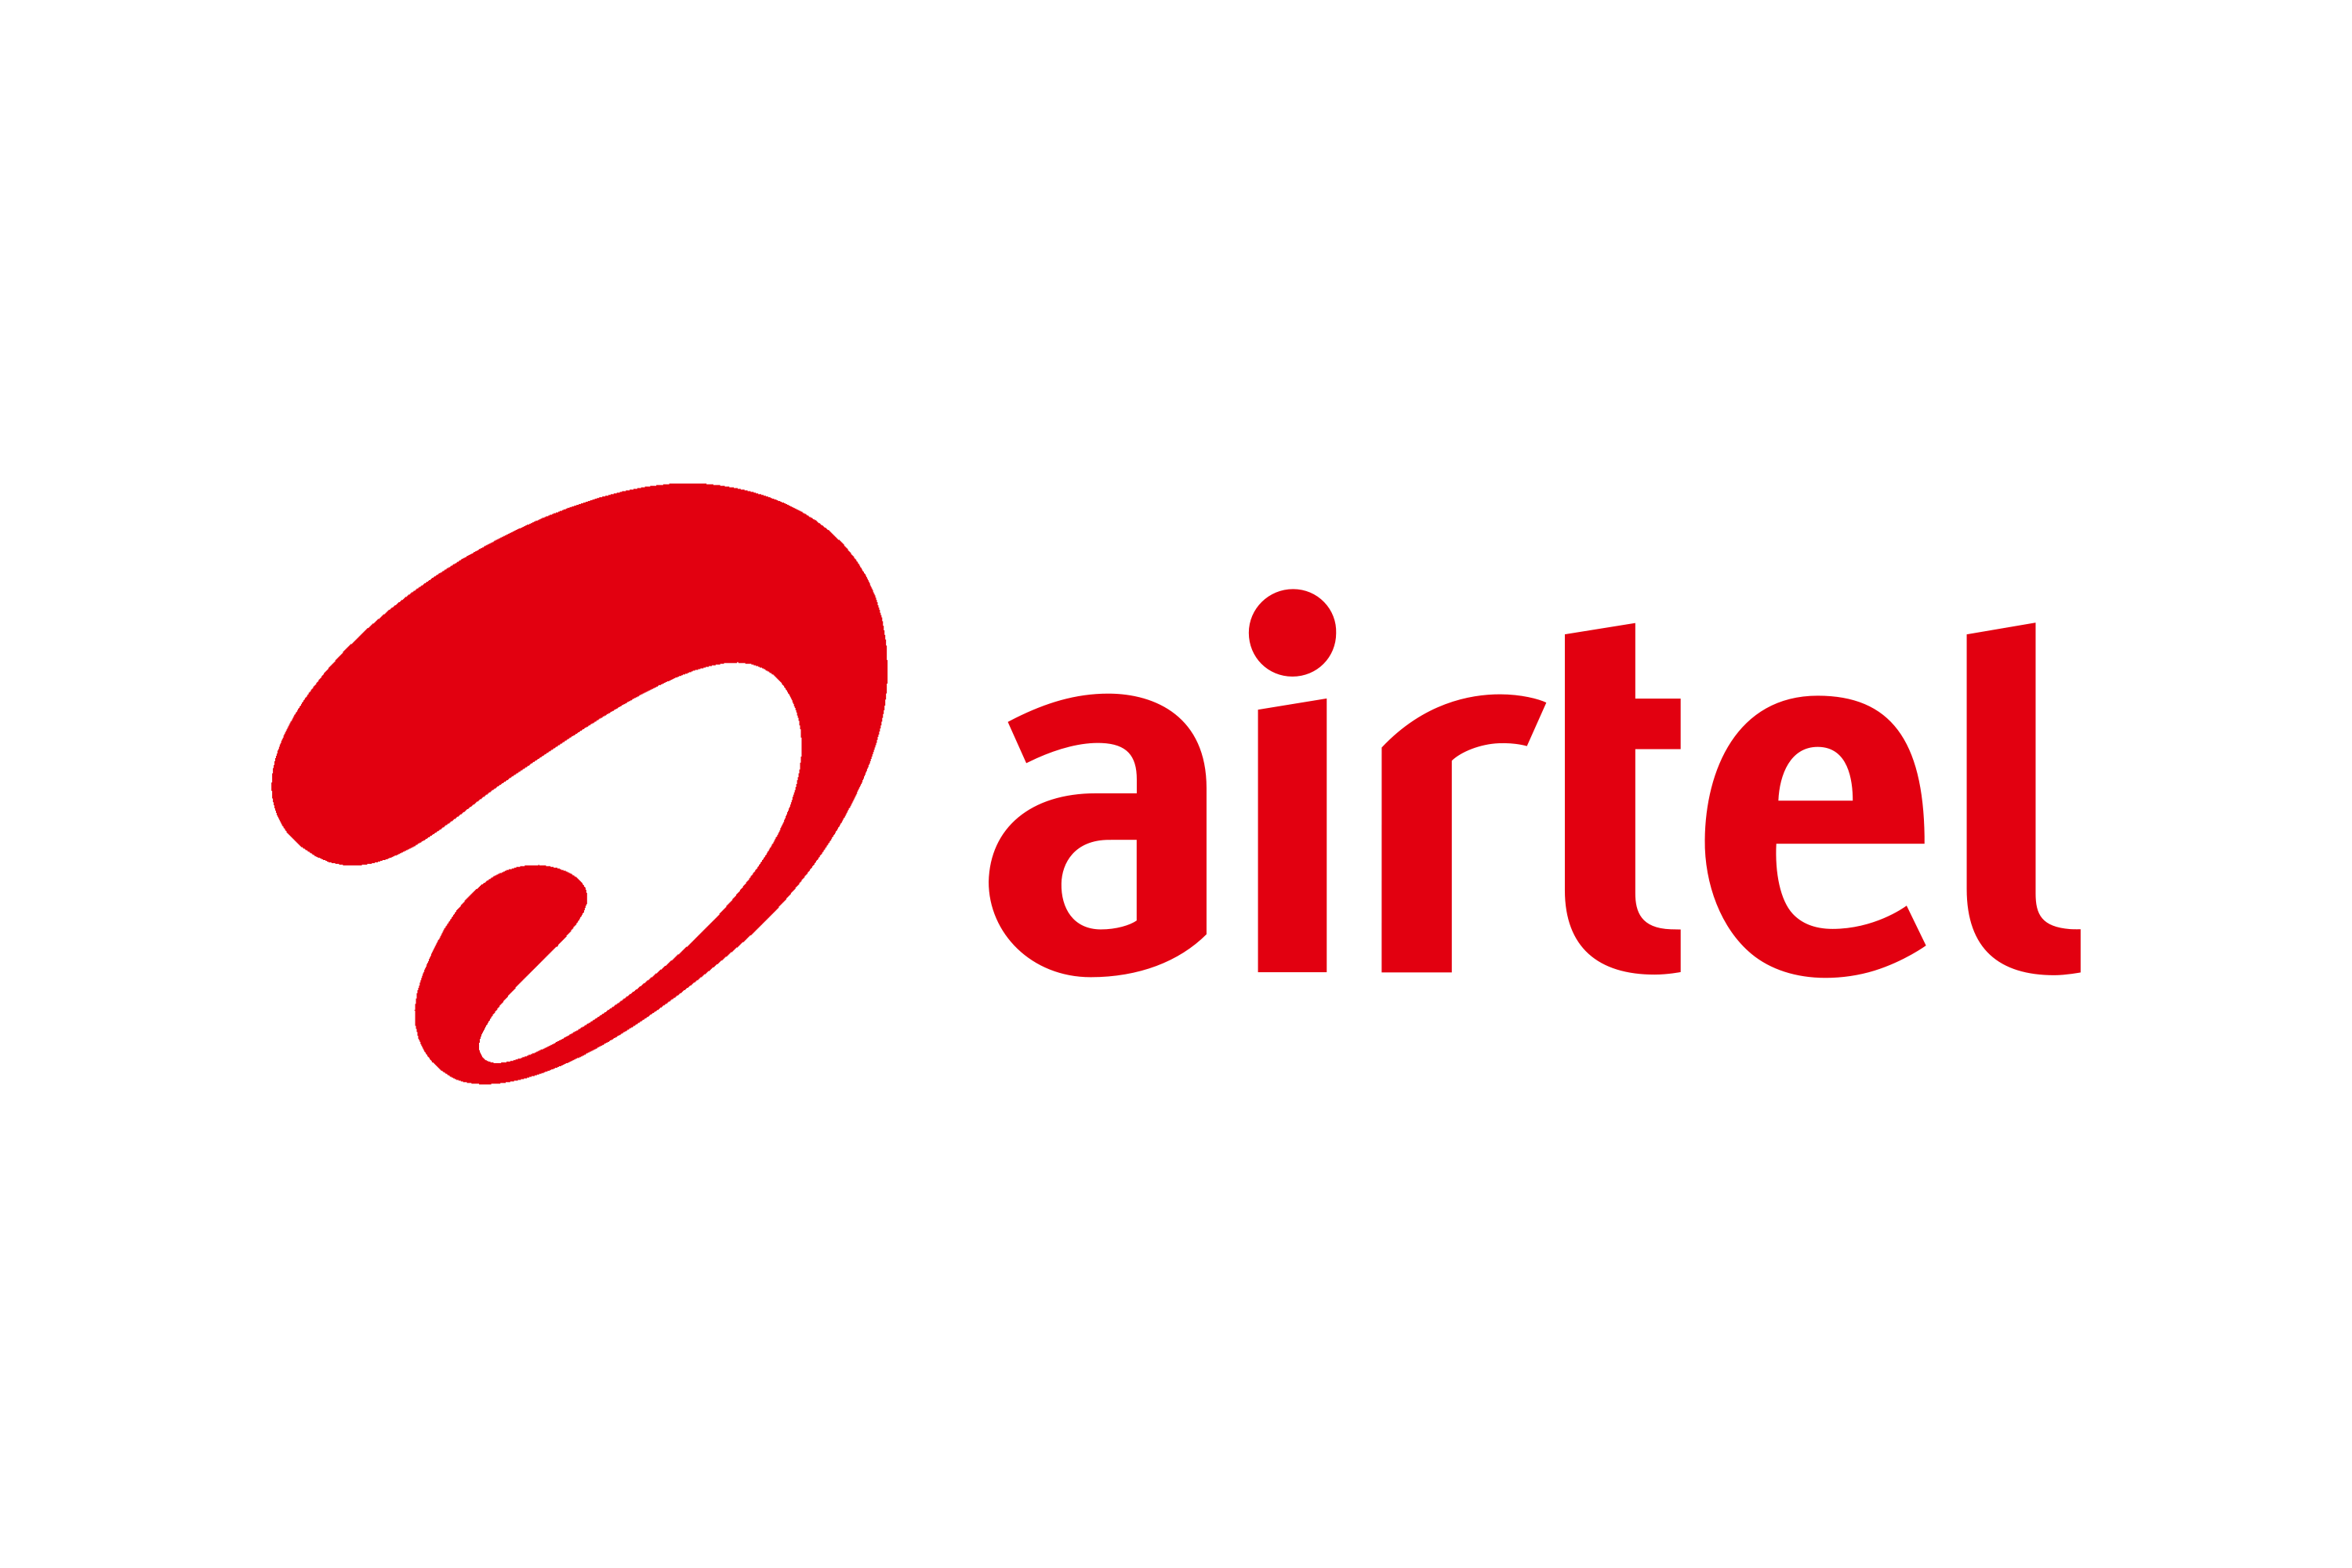 Airtel_Uganda-Logo